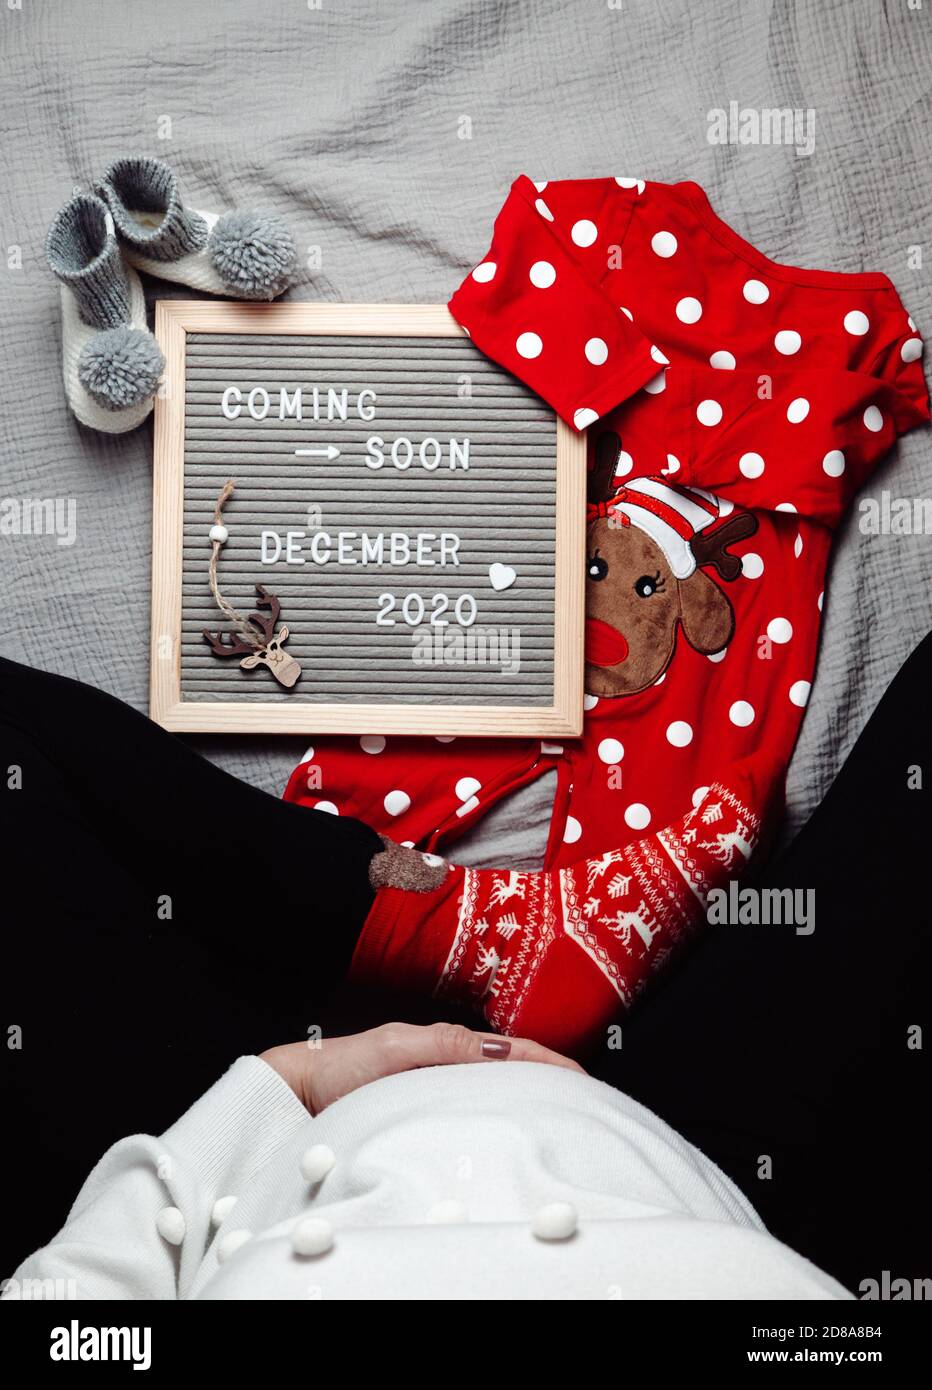 Schwangere Frau sitzt mit einem kommenden bald Dezember 2020 Baby Ankündigungszeichen. Demnächst Weihnachtskonzept. Schwangerschaftsbauch. Stockfoto